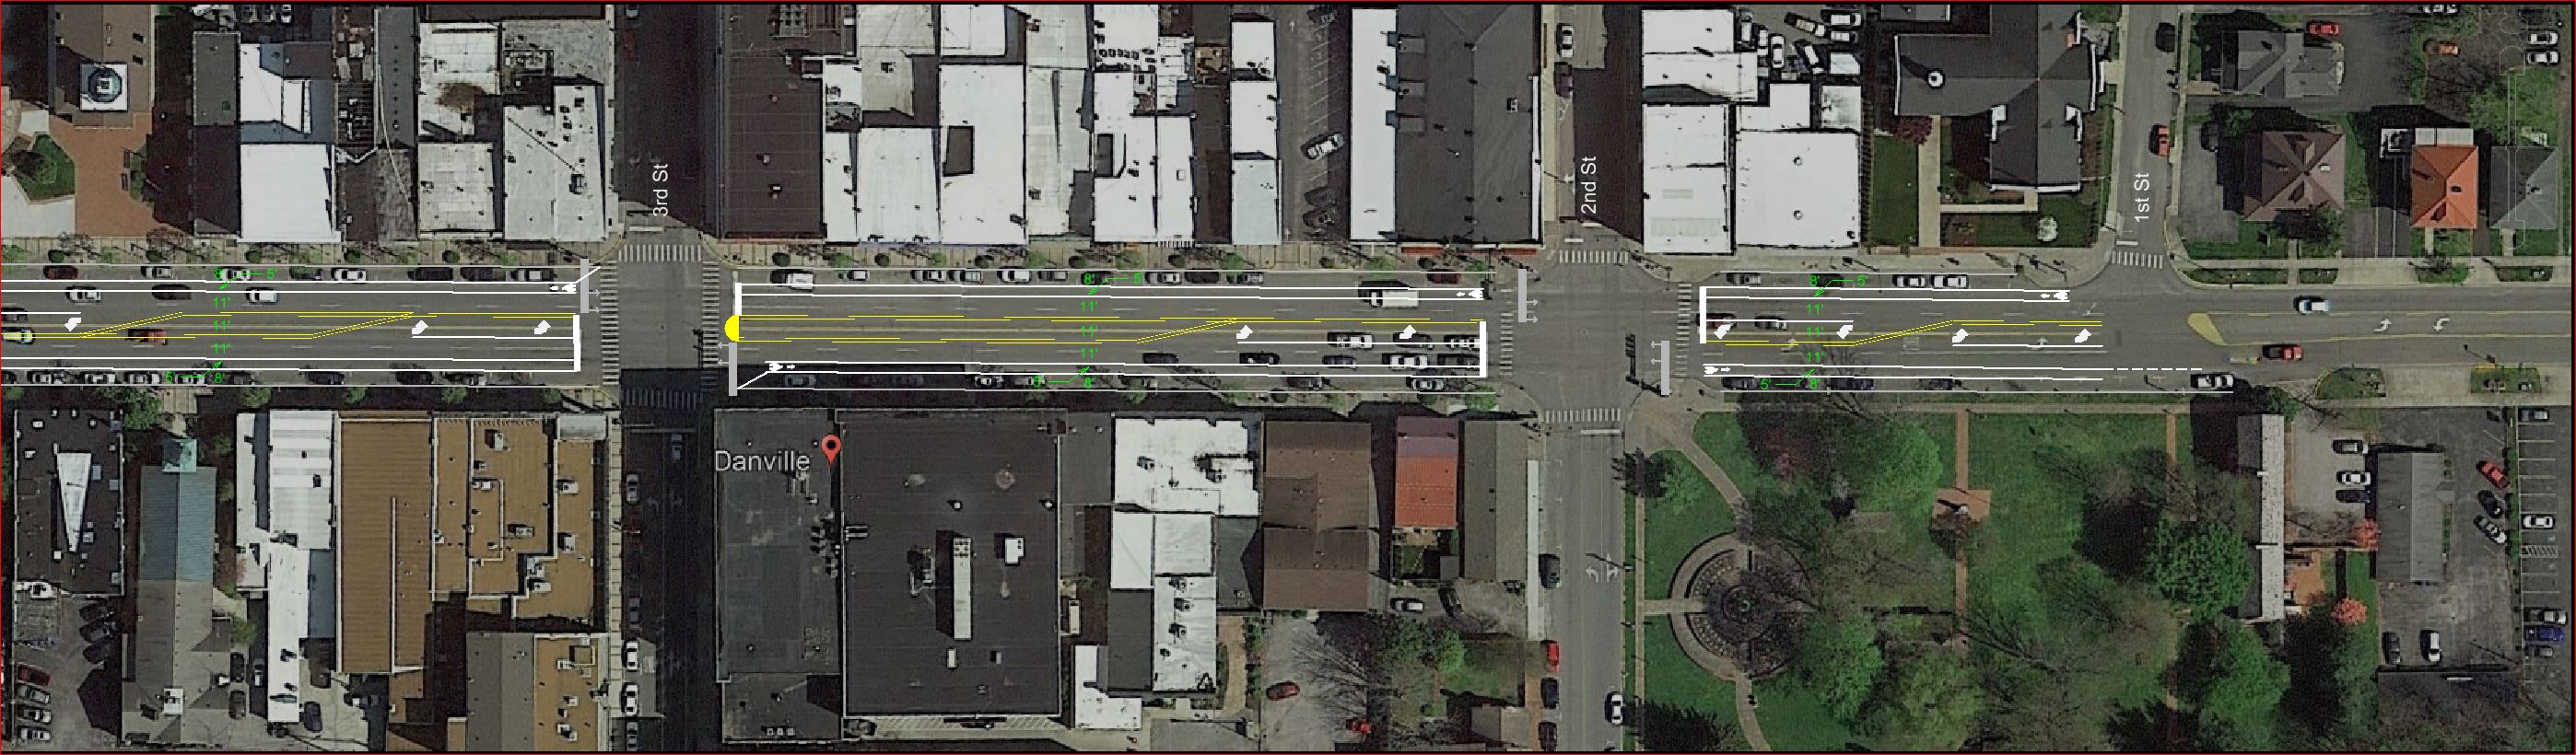 FINAL Danville Main St Striping (bike lanes)_Page_2.jpg